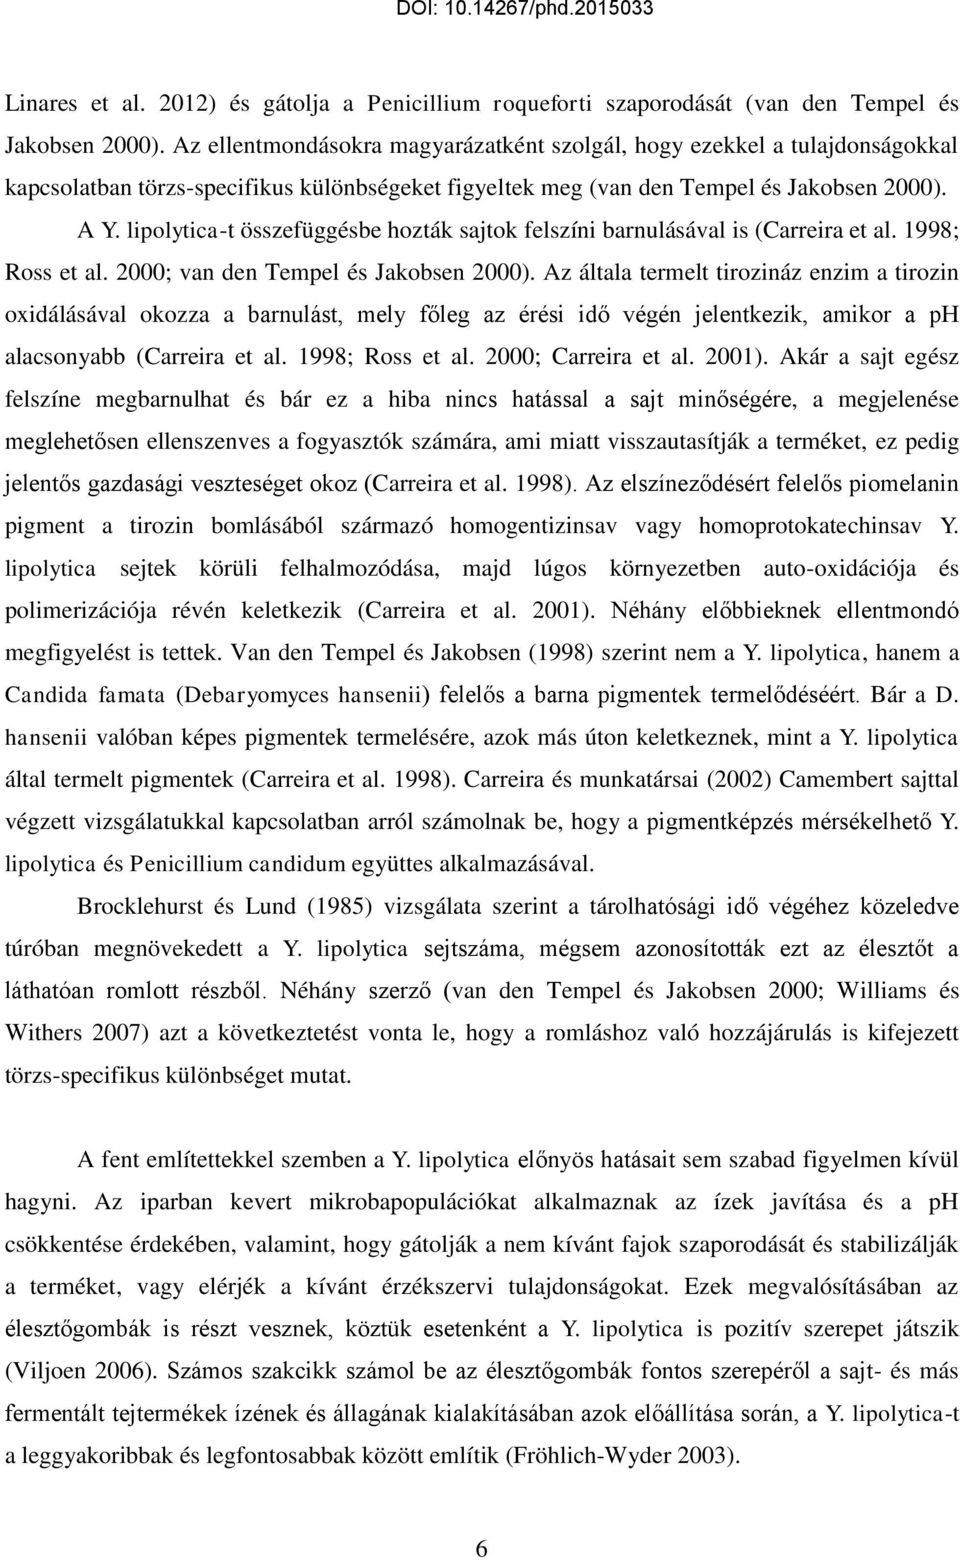 lipolytica-t összefüggésbe hozták sajtok felszíni barnulásával is (Carreira et al. 1998; Ross et al. 2000; van den Tempel és Jakobsen 2000).